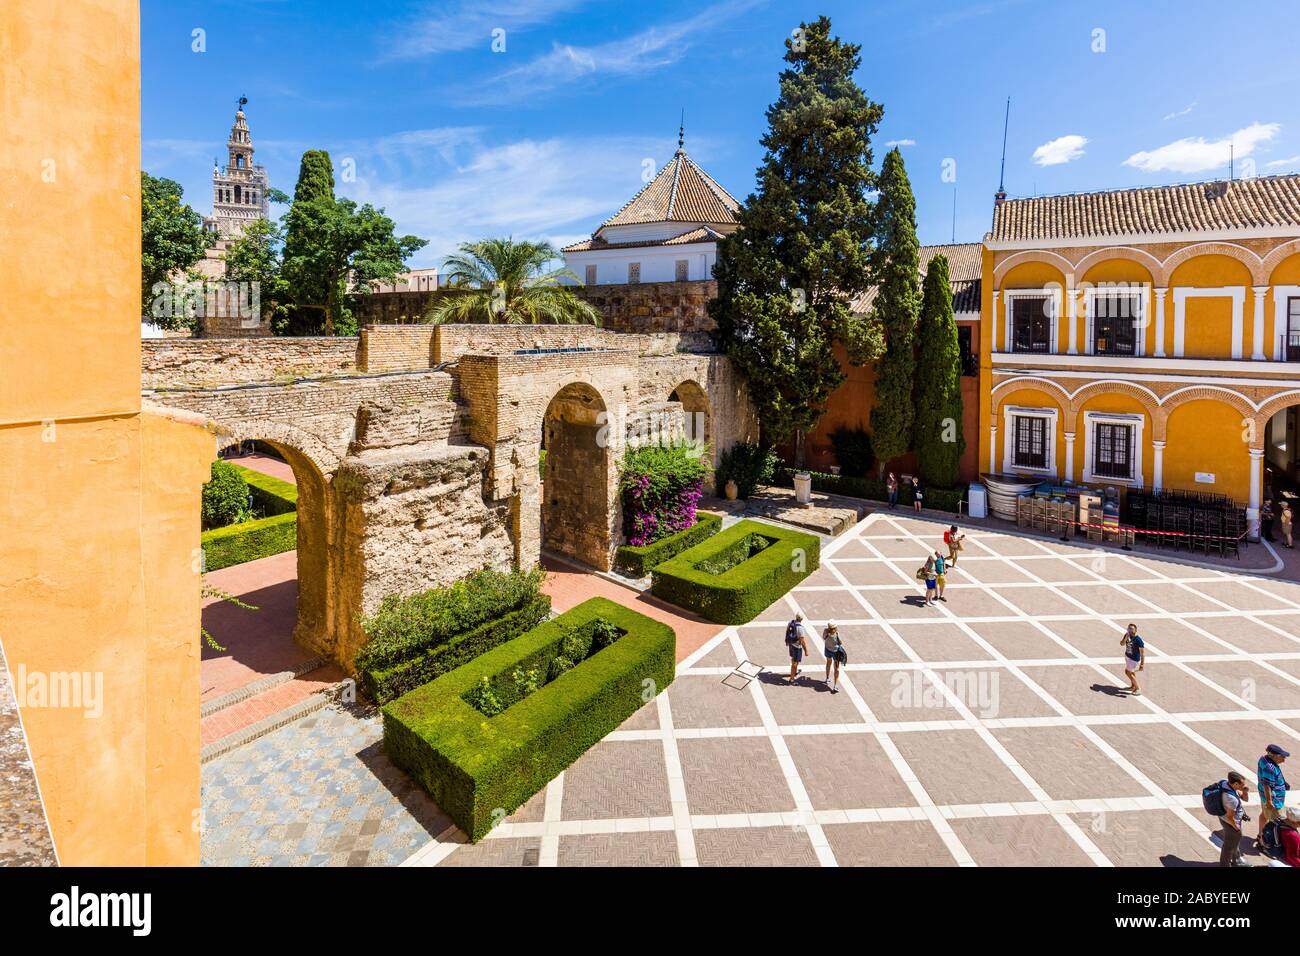 Real Alcazar de Séville, l'Alcazar Royal de Séville est un palais royal à Séville Andalousie Espagne Banque D'Images